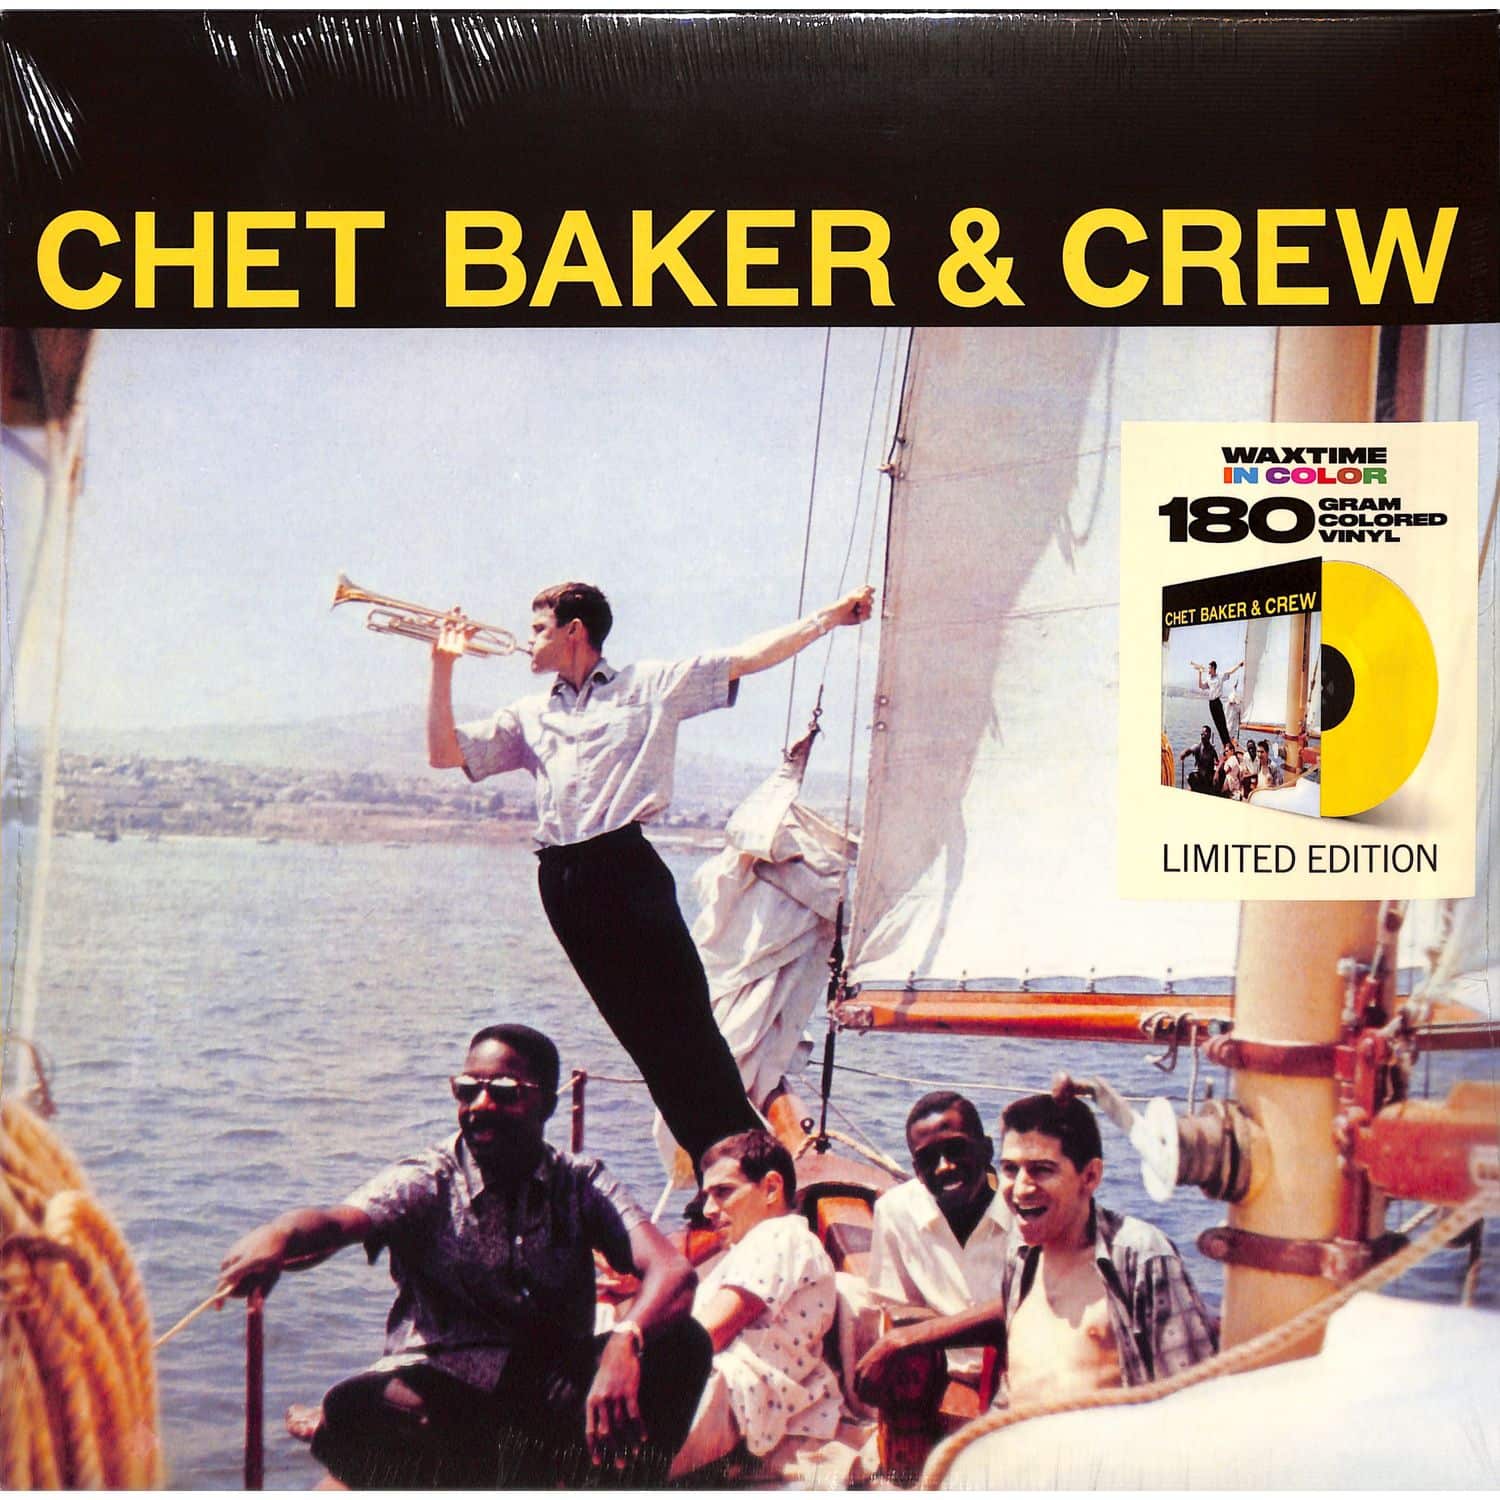 Chet Baker & Crew - CHET BAKER & CREW+1 BONUS TRACK 